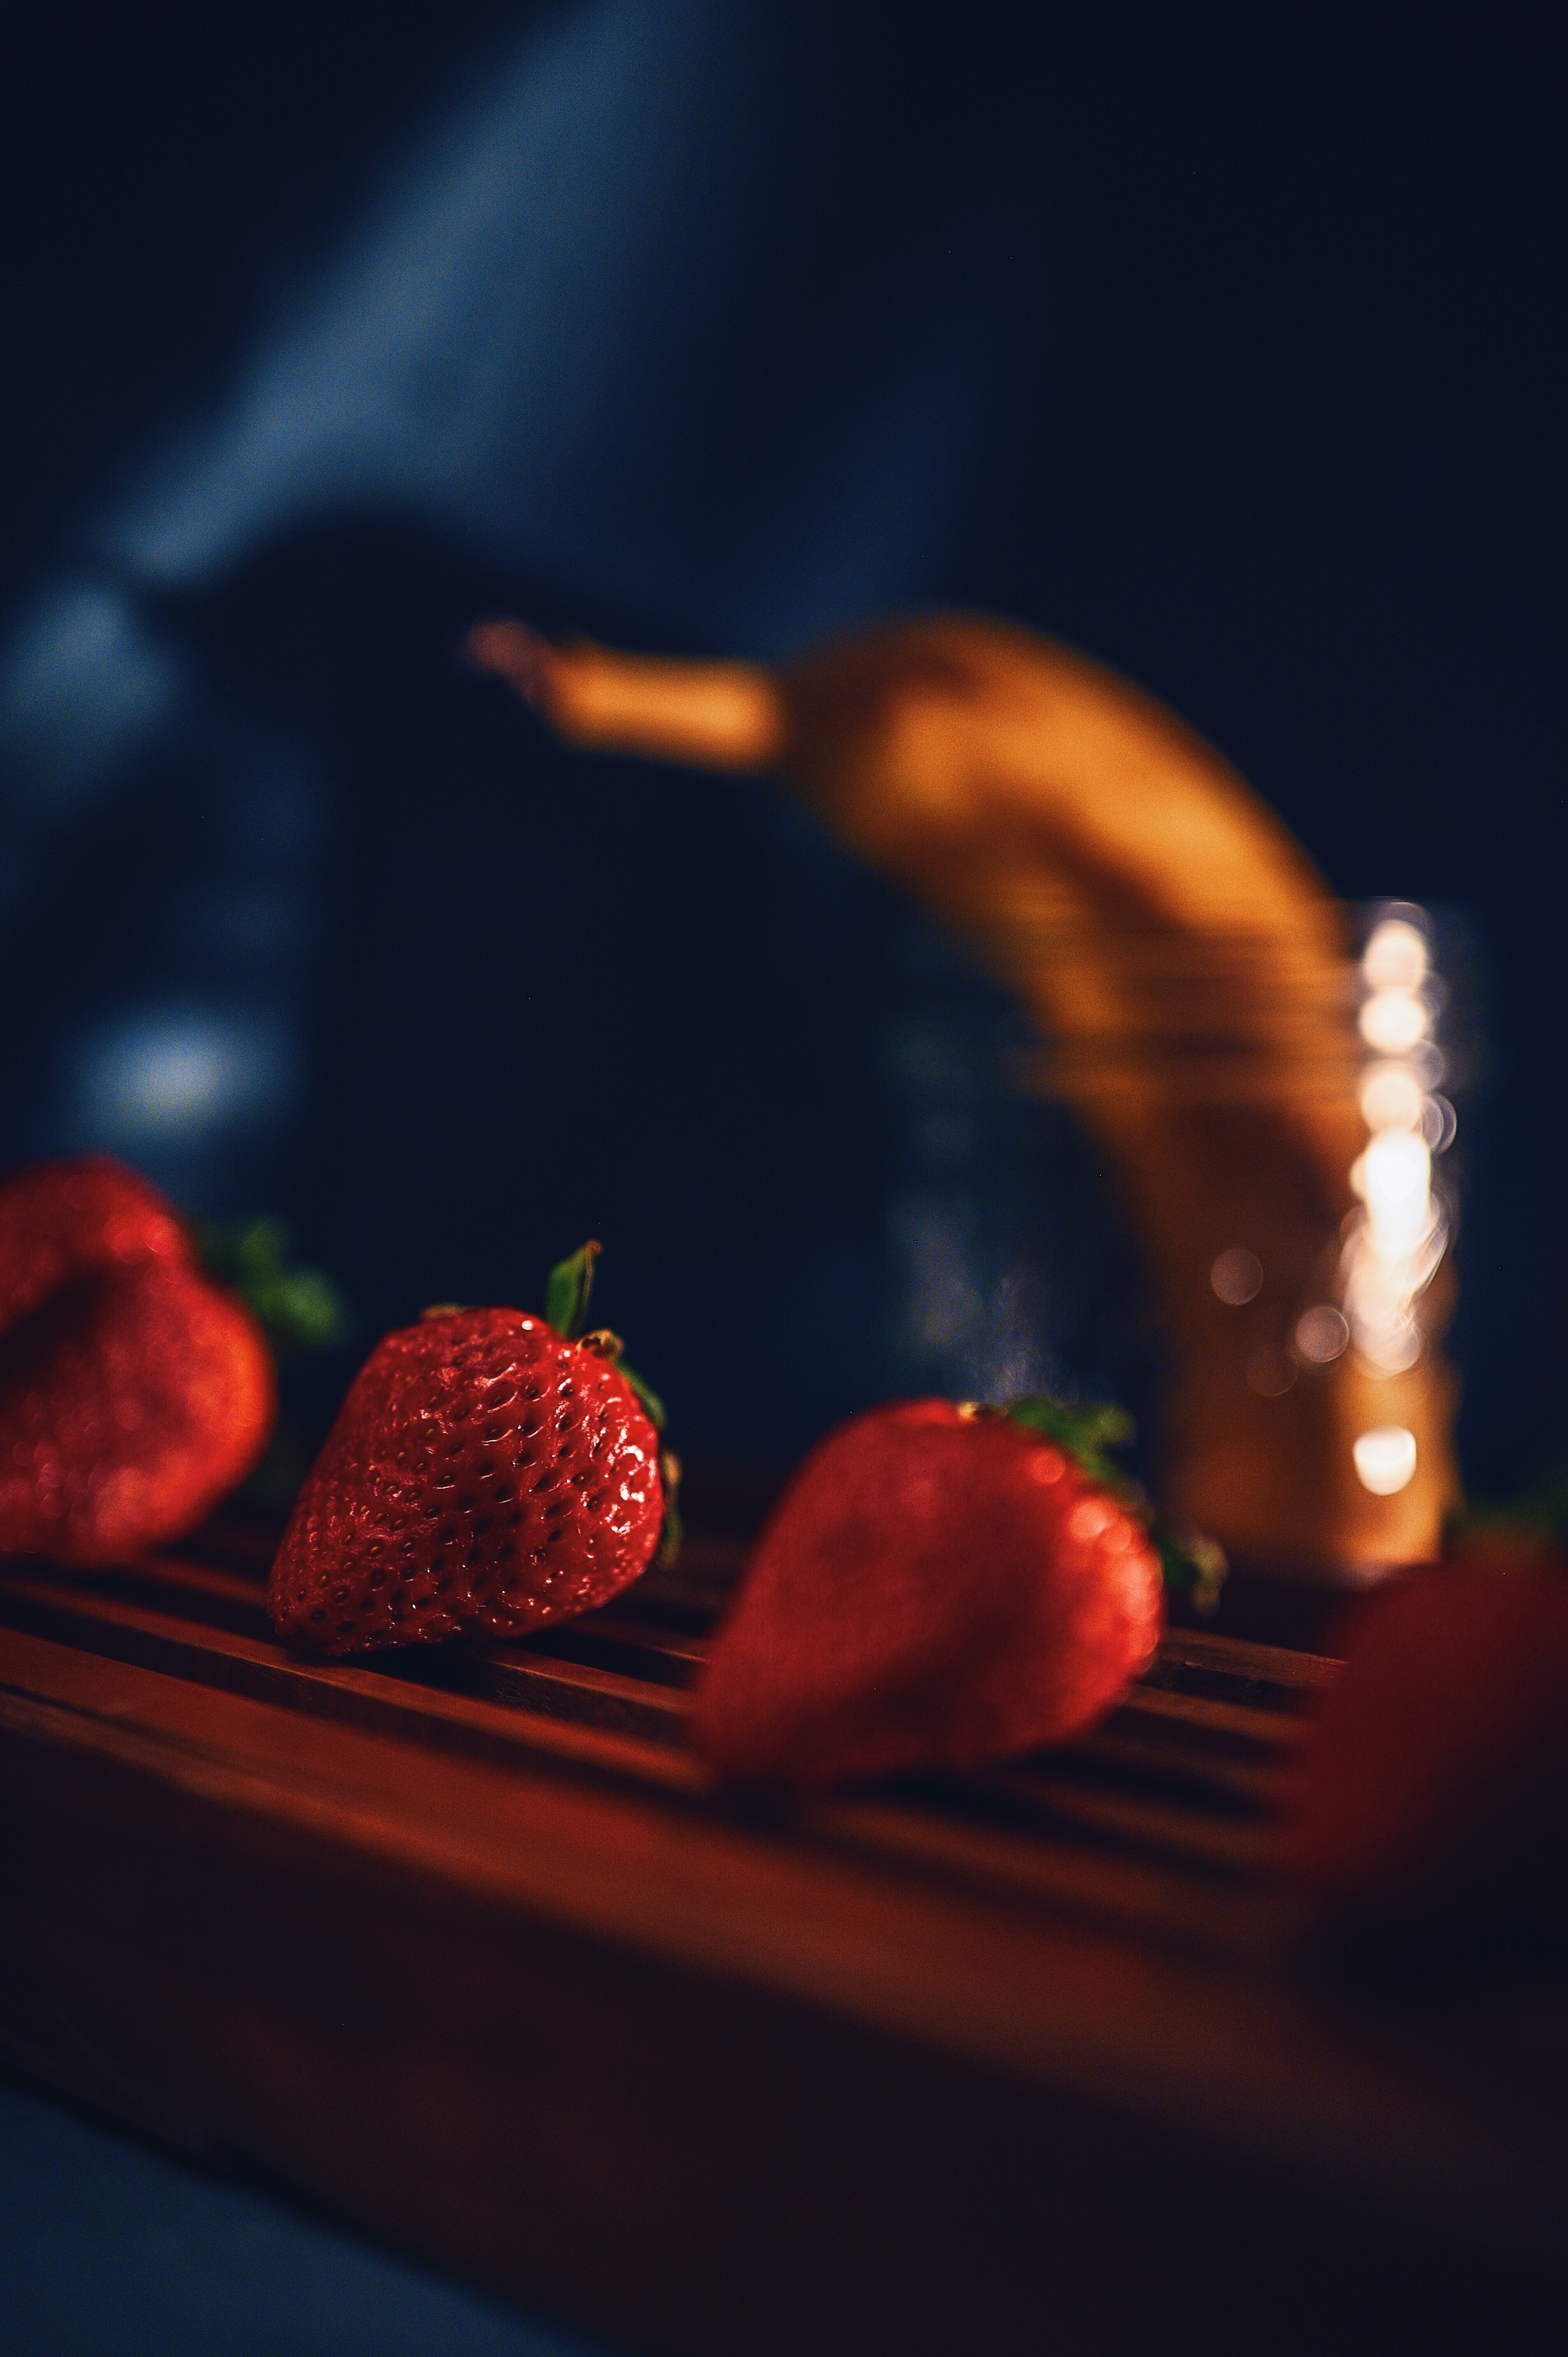 strawberry, berries, red, macro, ripe, juicy